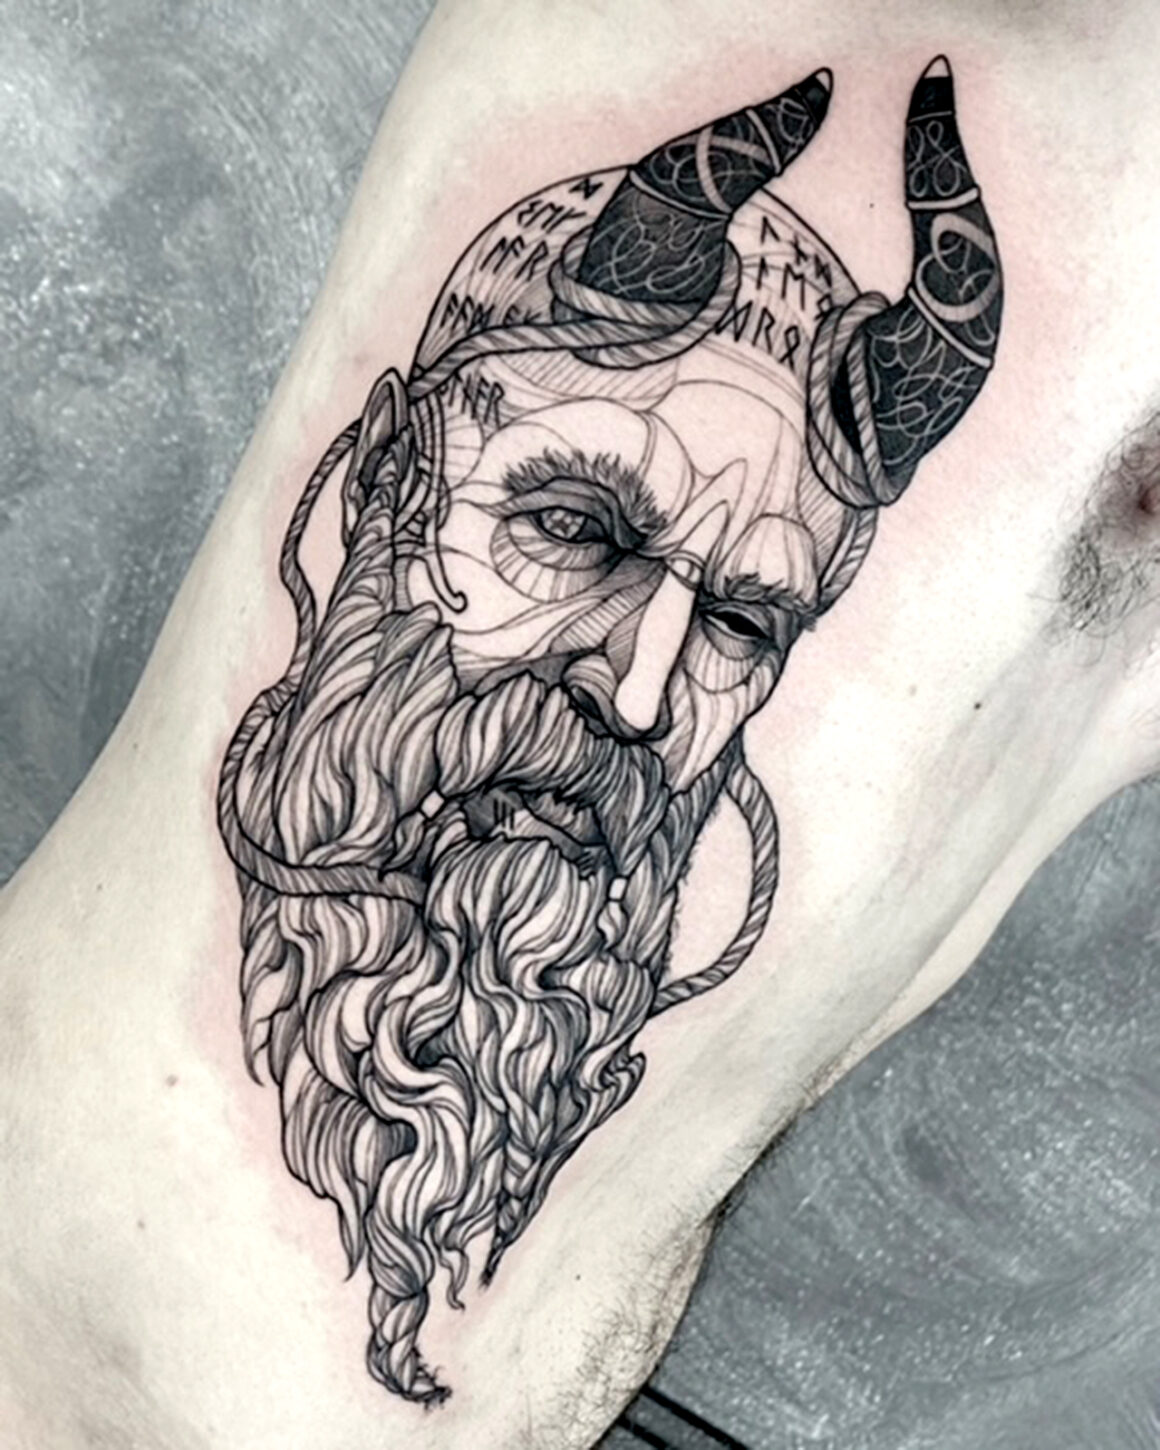 Tatuaggio di Testun tattoo, @nikk_testun